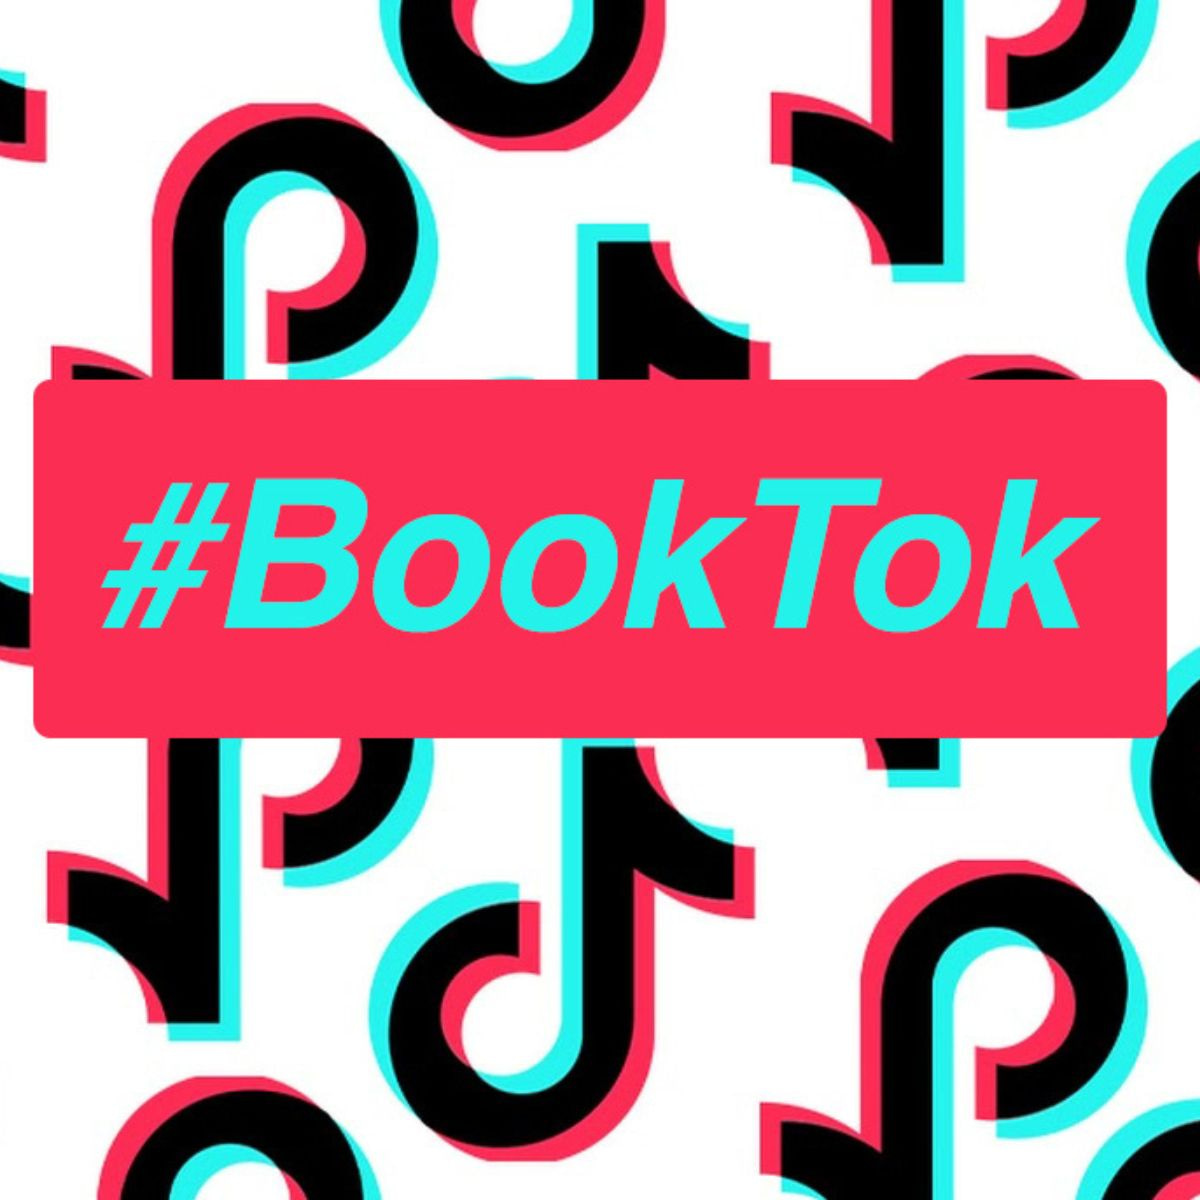 Il fenomeno BookTok